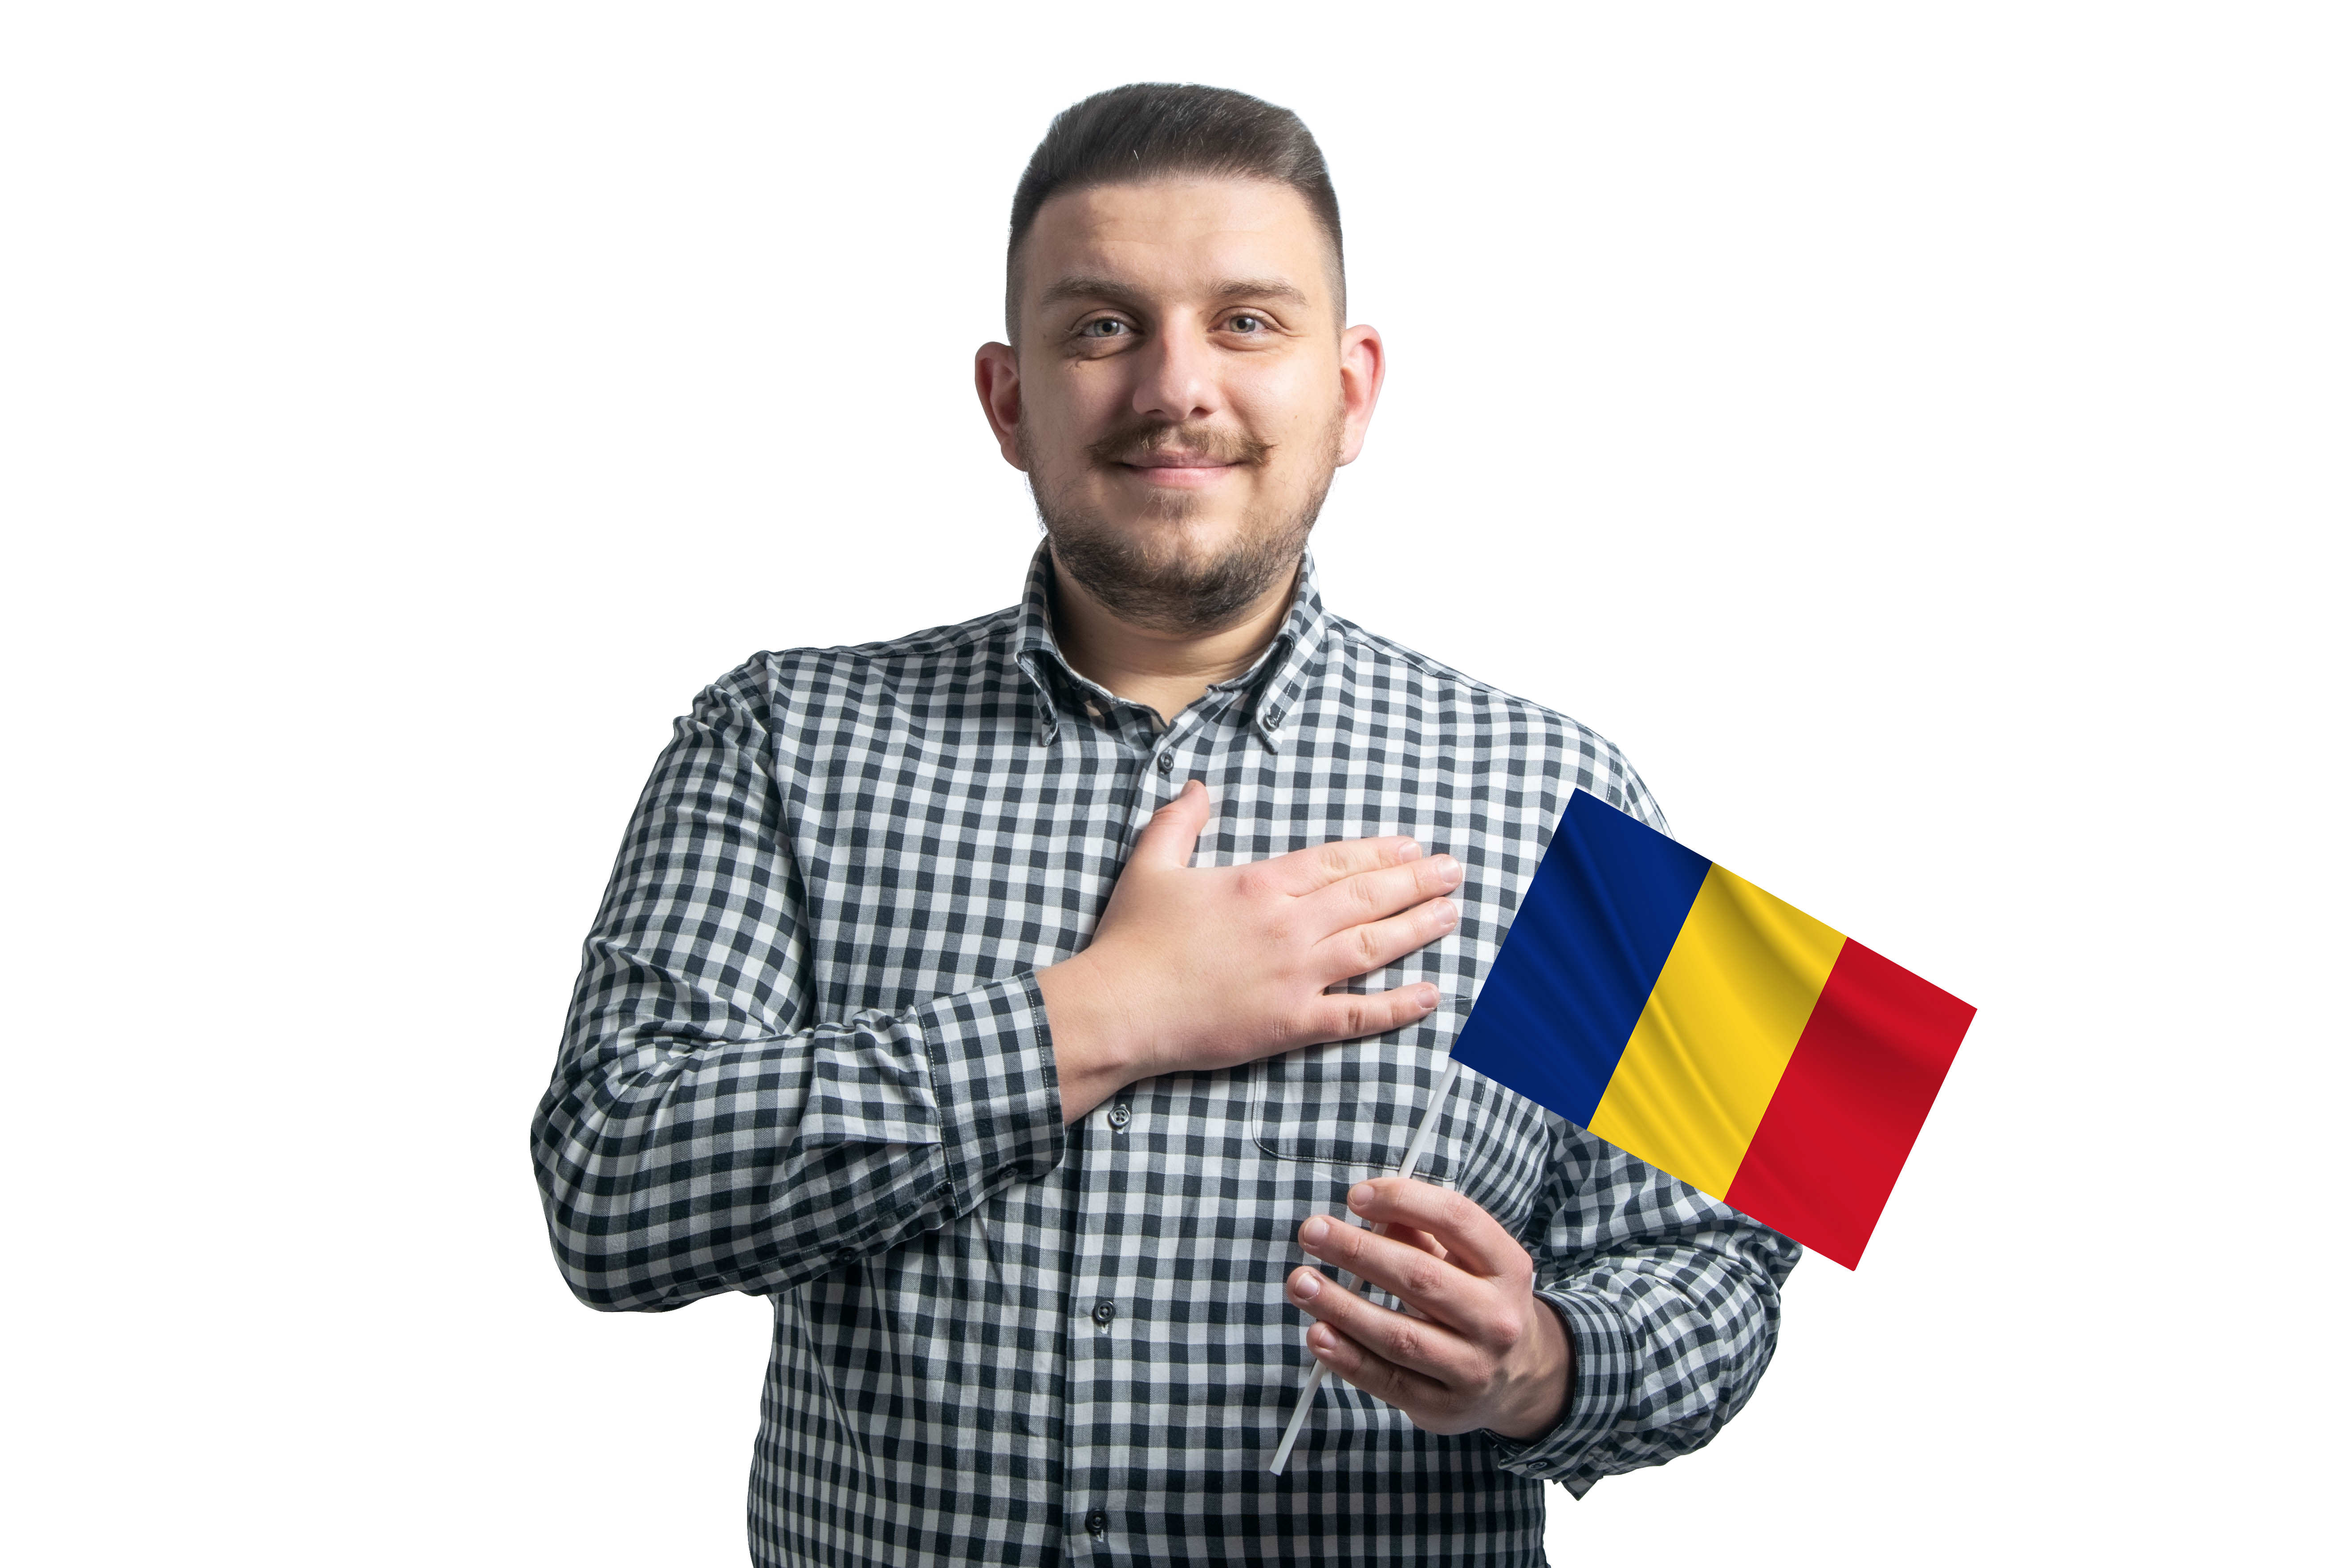 Принятие присяги на верность Румынии, как окончательный этап оформления румынского паспорта